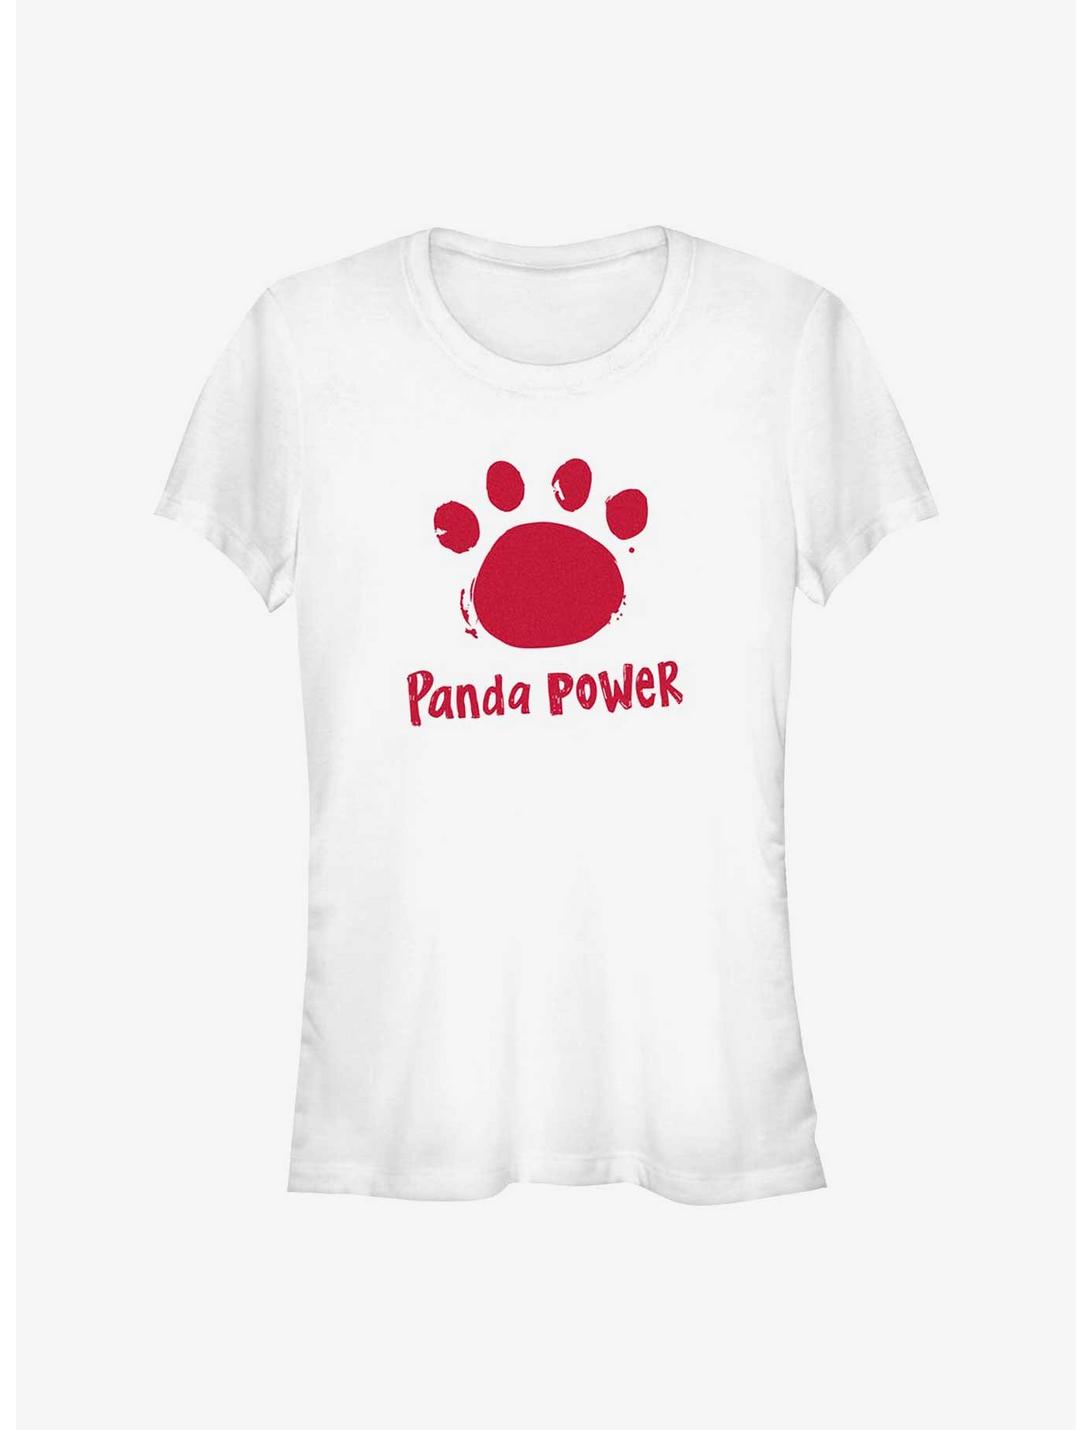 Disney Pixar Turning Red Panda Power Girls T-Shirt, WHITE, hi-res